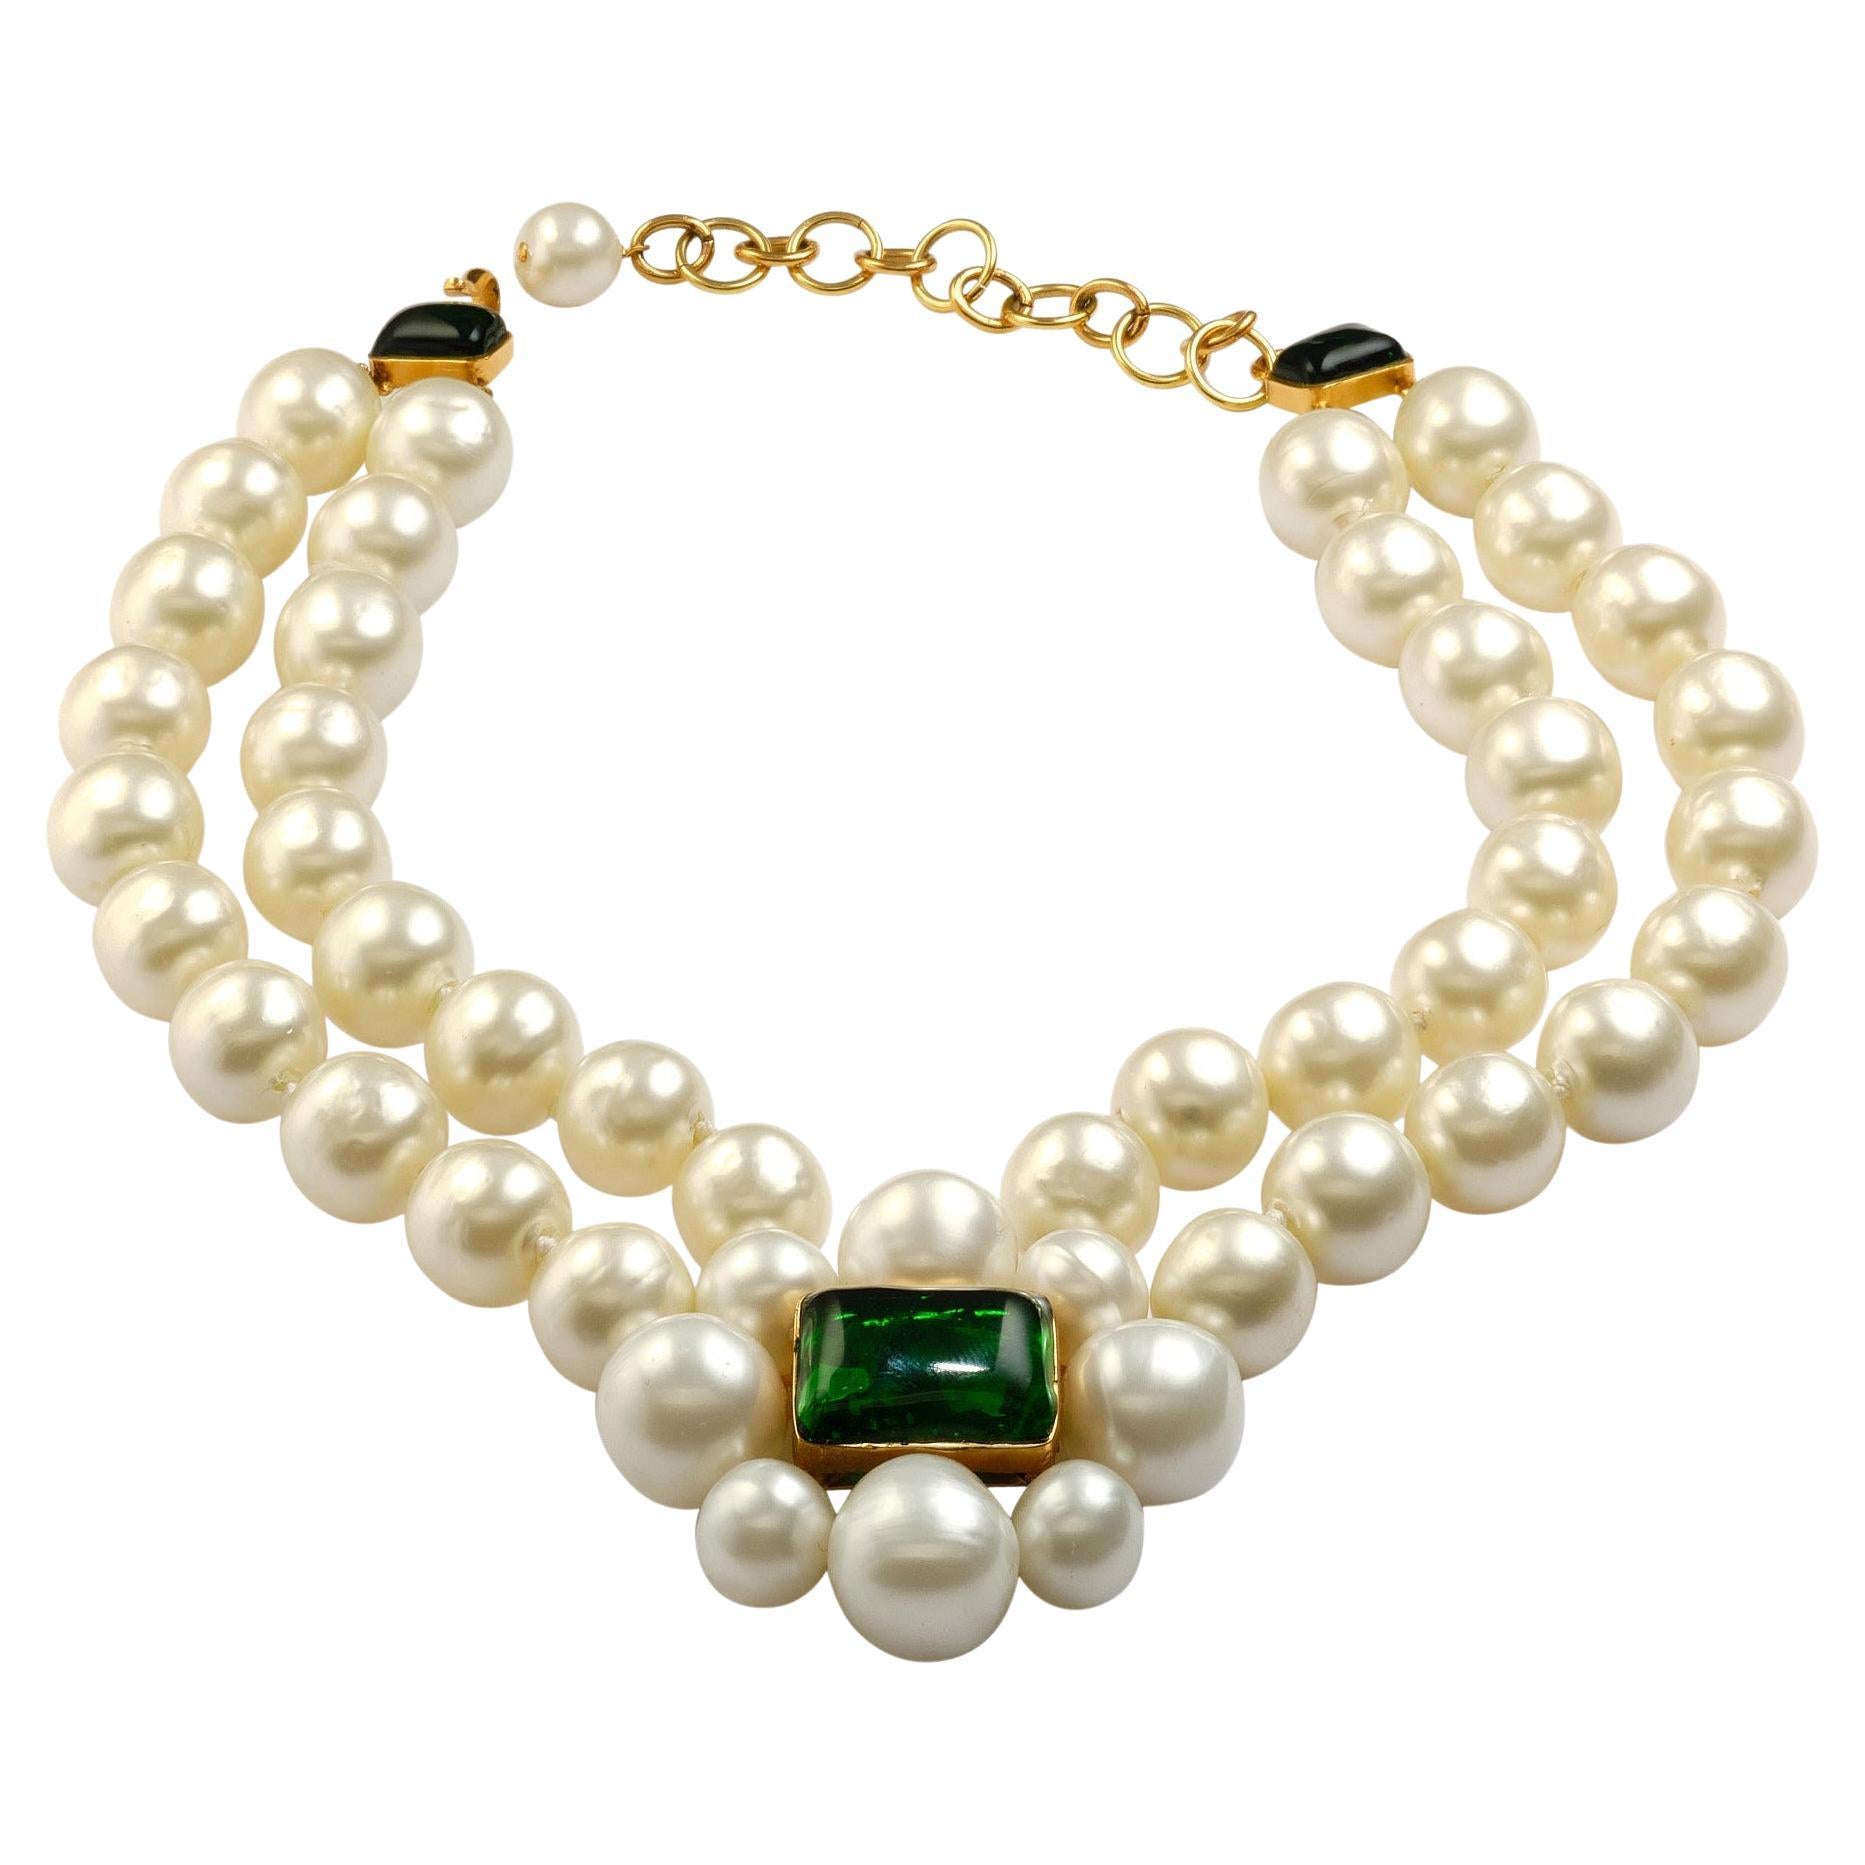 Magnifique collier CHANEL  (FABRIQUÉ EN FRANCE)  avec de très gros nœuds faits à la main  perles. Au milieu se trouve un camélia composé de 8 perles avec une pierre de verre verte de Gripoix au centre. Comme fermoir, le même Gripoix en vert avec